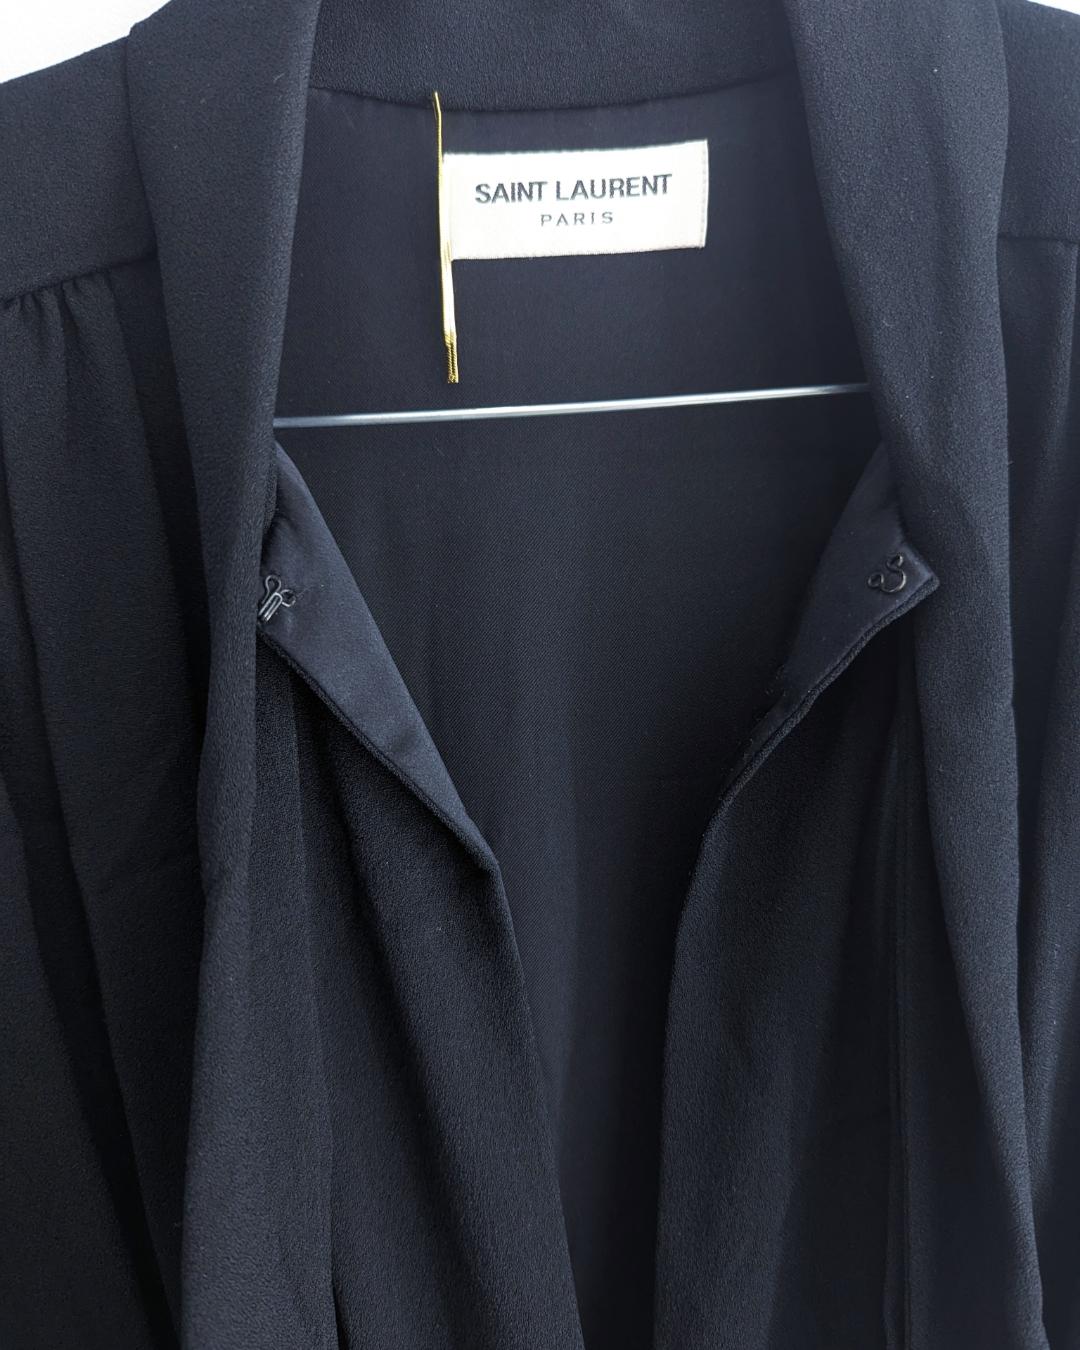 Saint Laurent F/W 2018 Schwarzes Kleid von Anthony Vaccarello mit Lavallière-Krawattenausschnitt.

. Ausschnitt entlang des Brusthalses
. Eiliger Rock
. unsichtbarer Reißverschluss
. Spitz zulaufende Schultern

 

Passt zu S, klein M
Flache